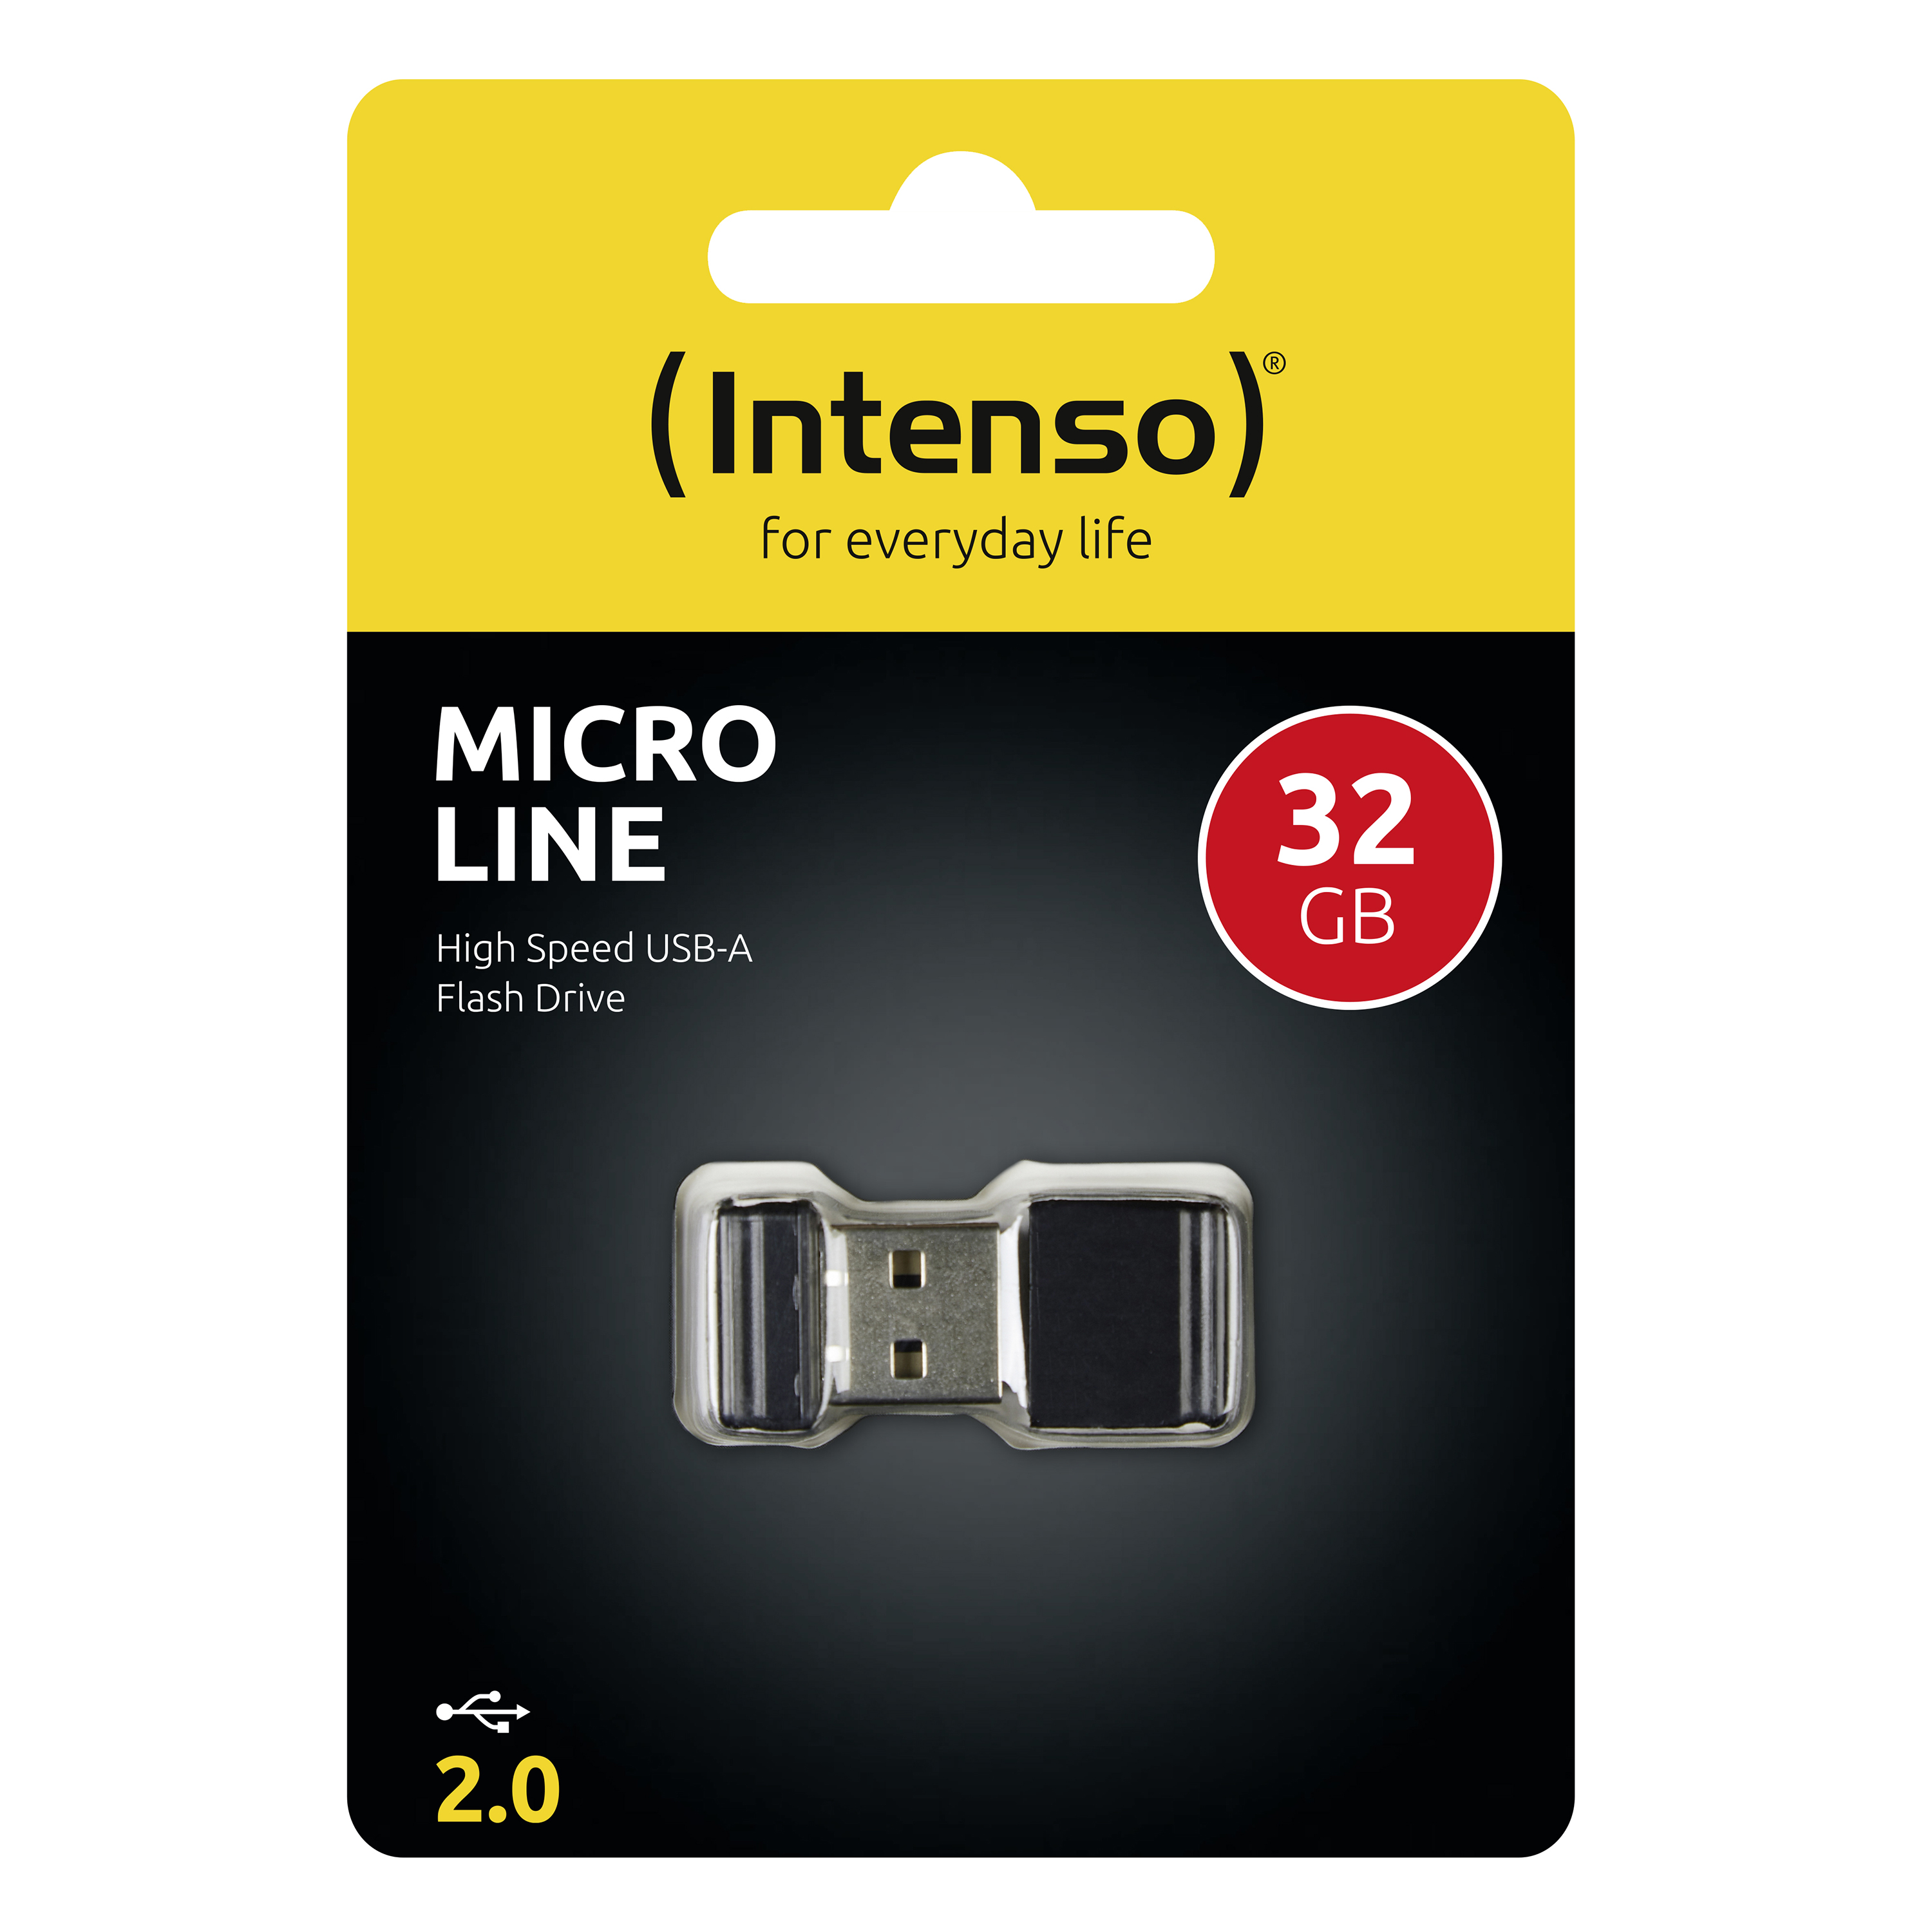 Intenso USB Stick Micro Line mini USB Flash Drive 32GB